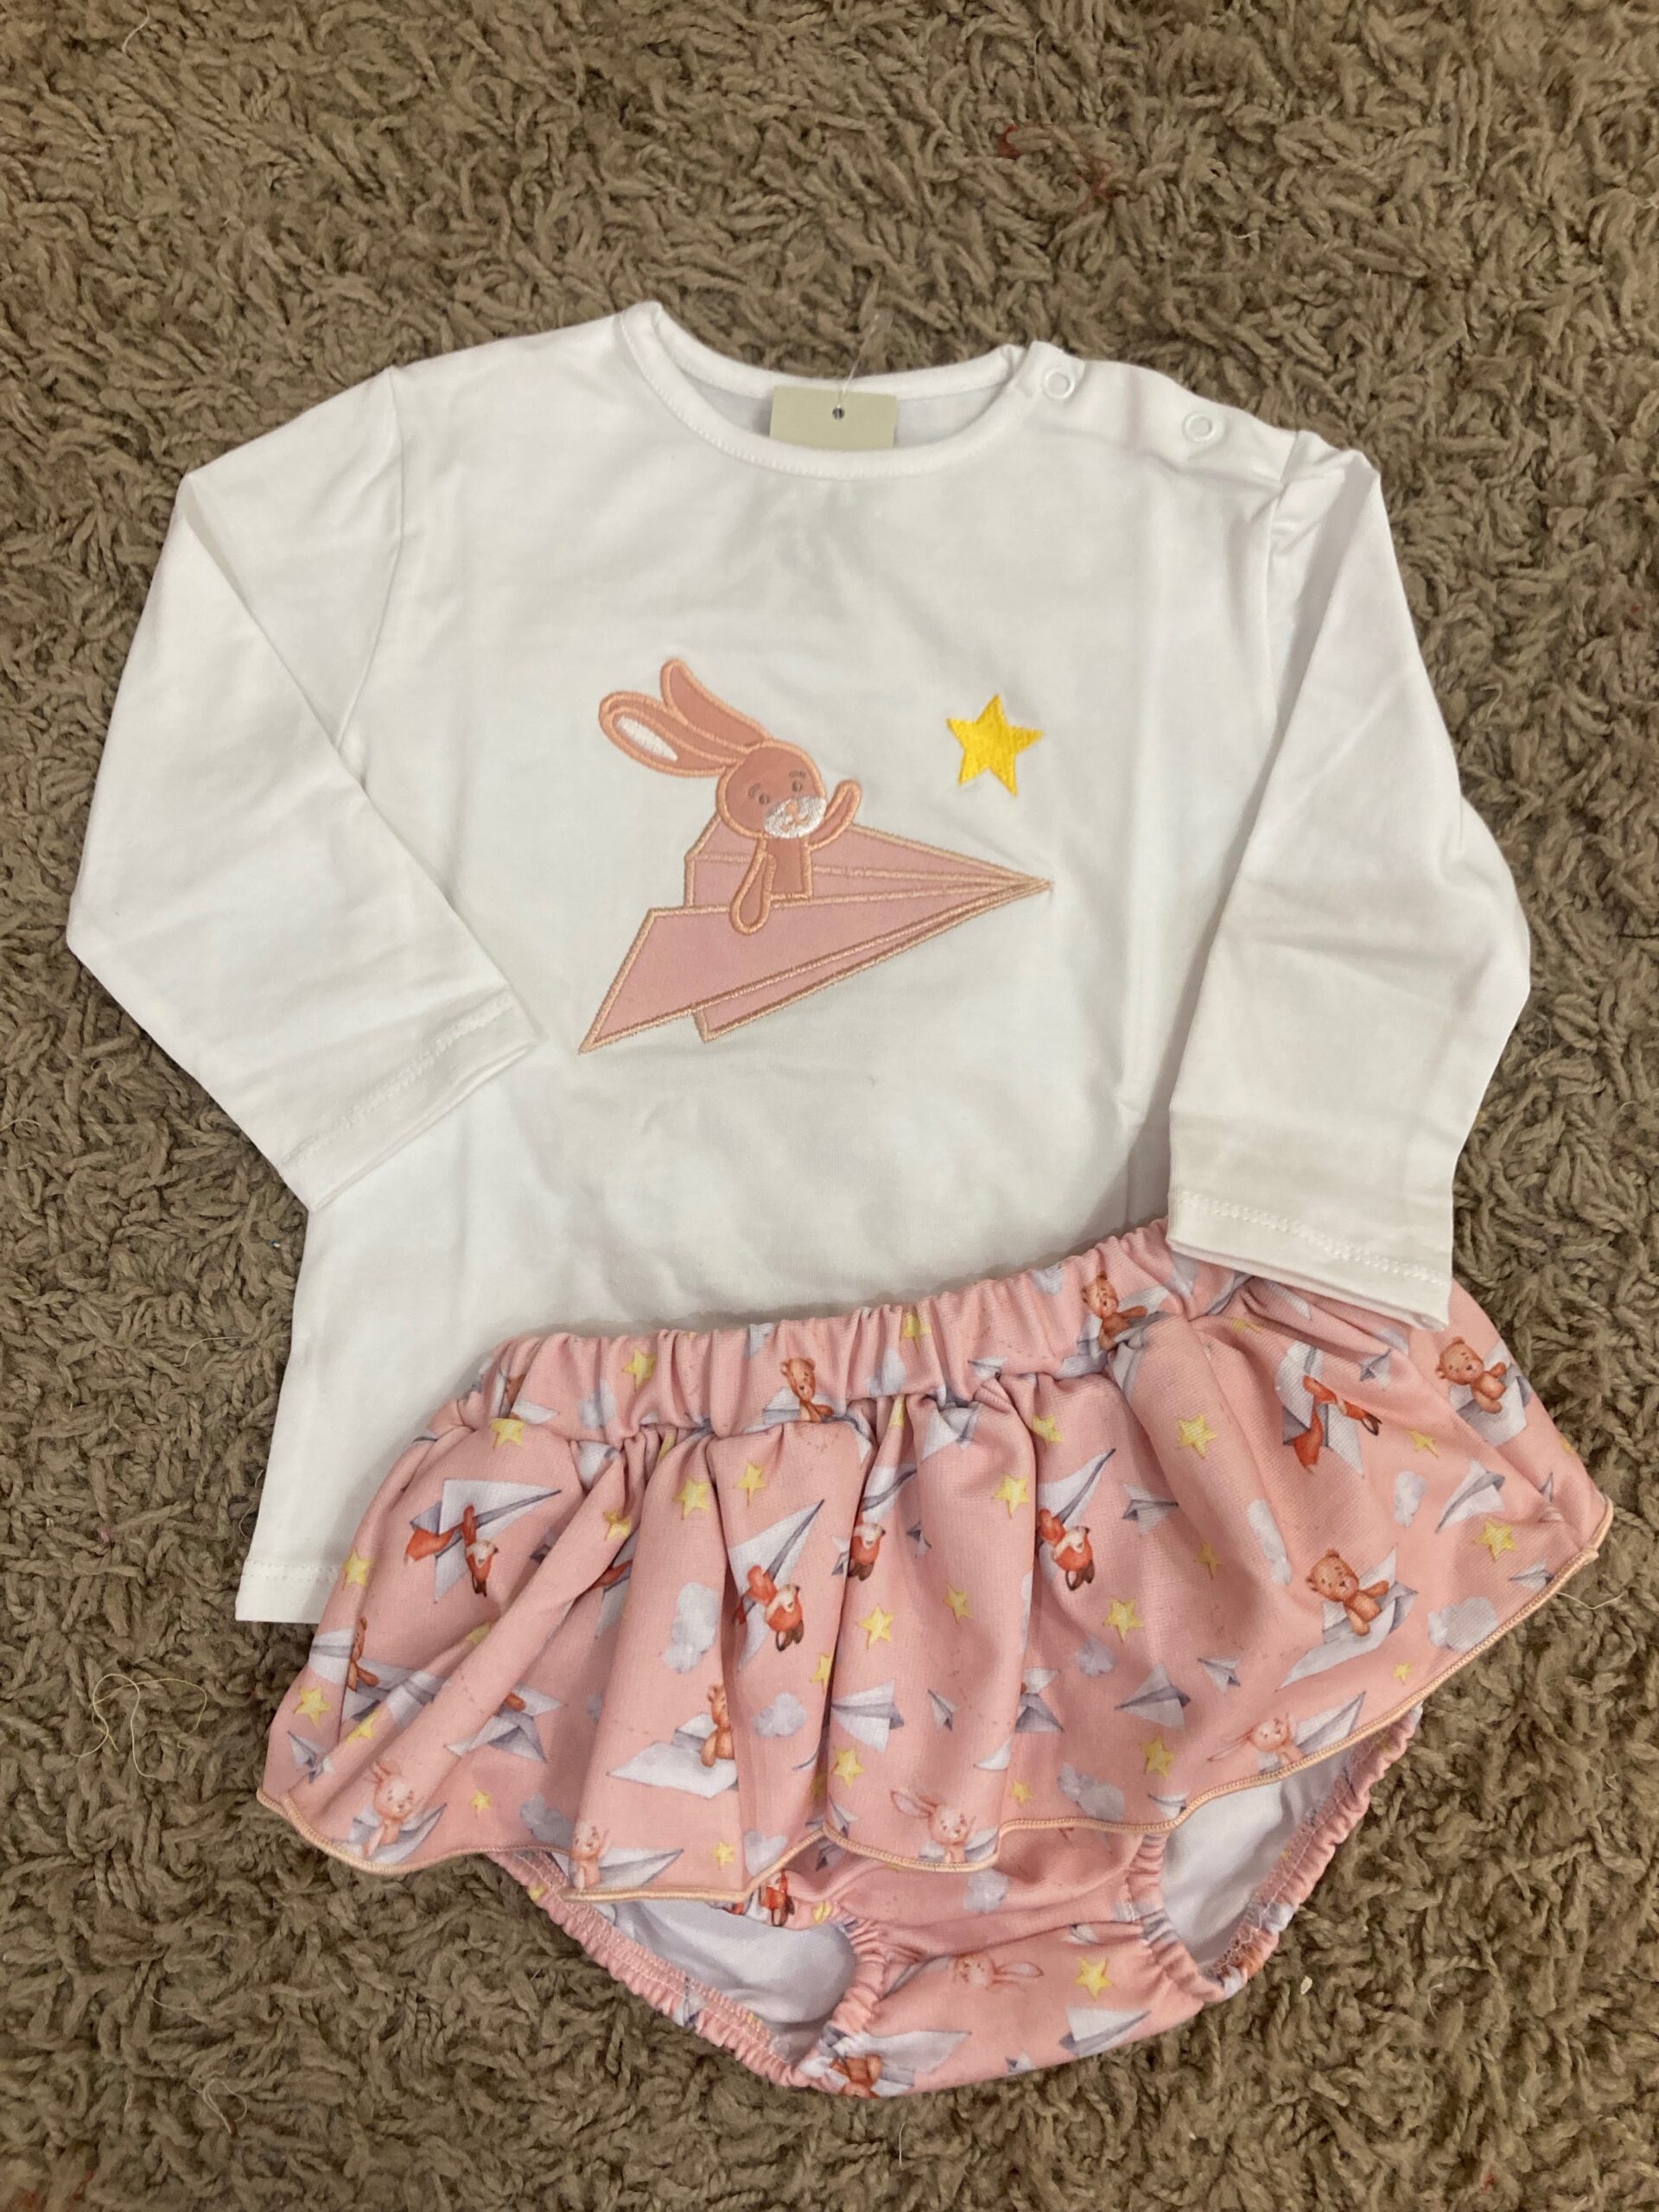 Bunny girl set